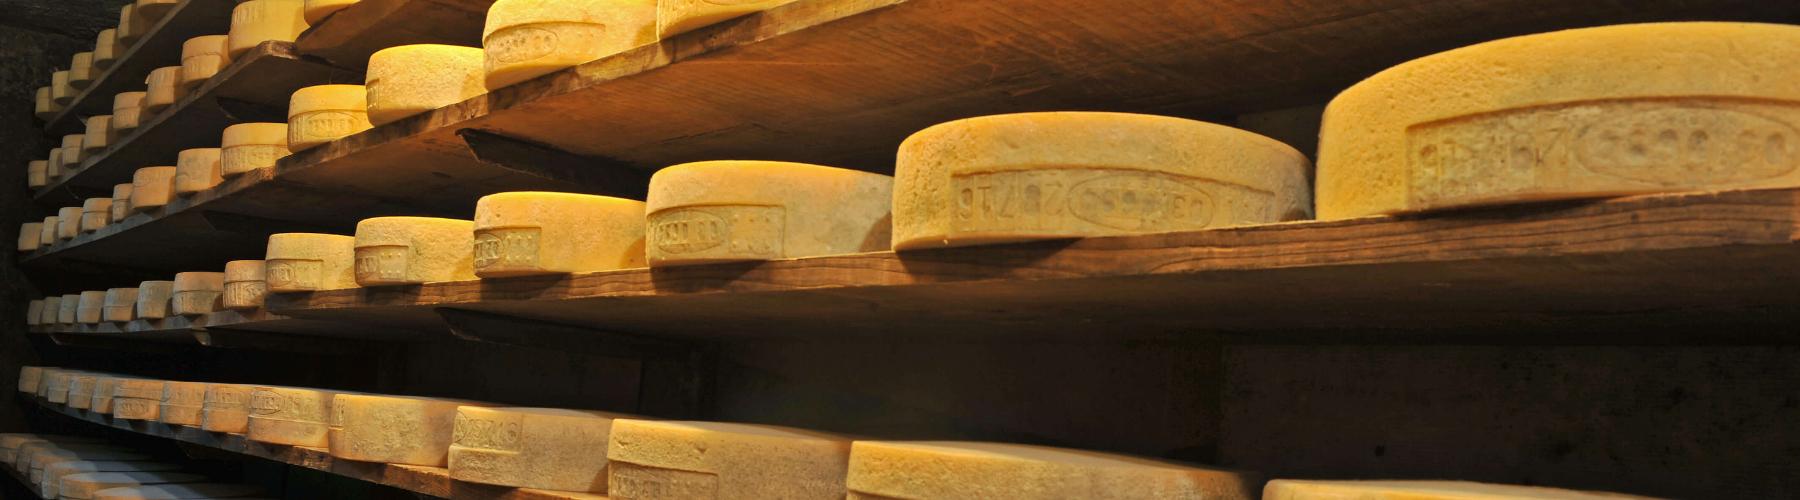 Il Casera valtellinese, un formaggio DOP unico